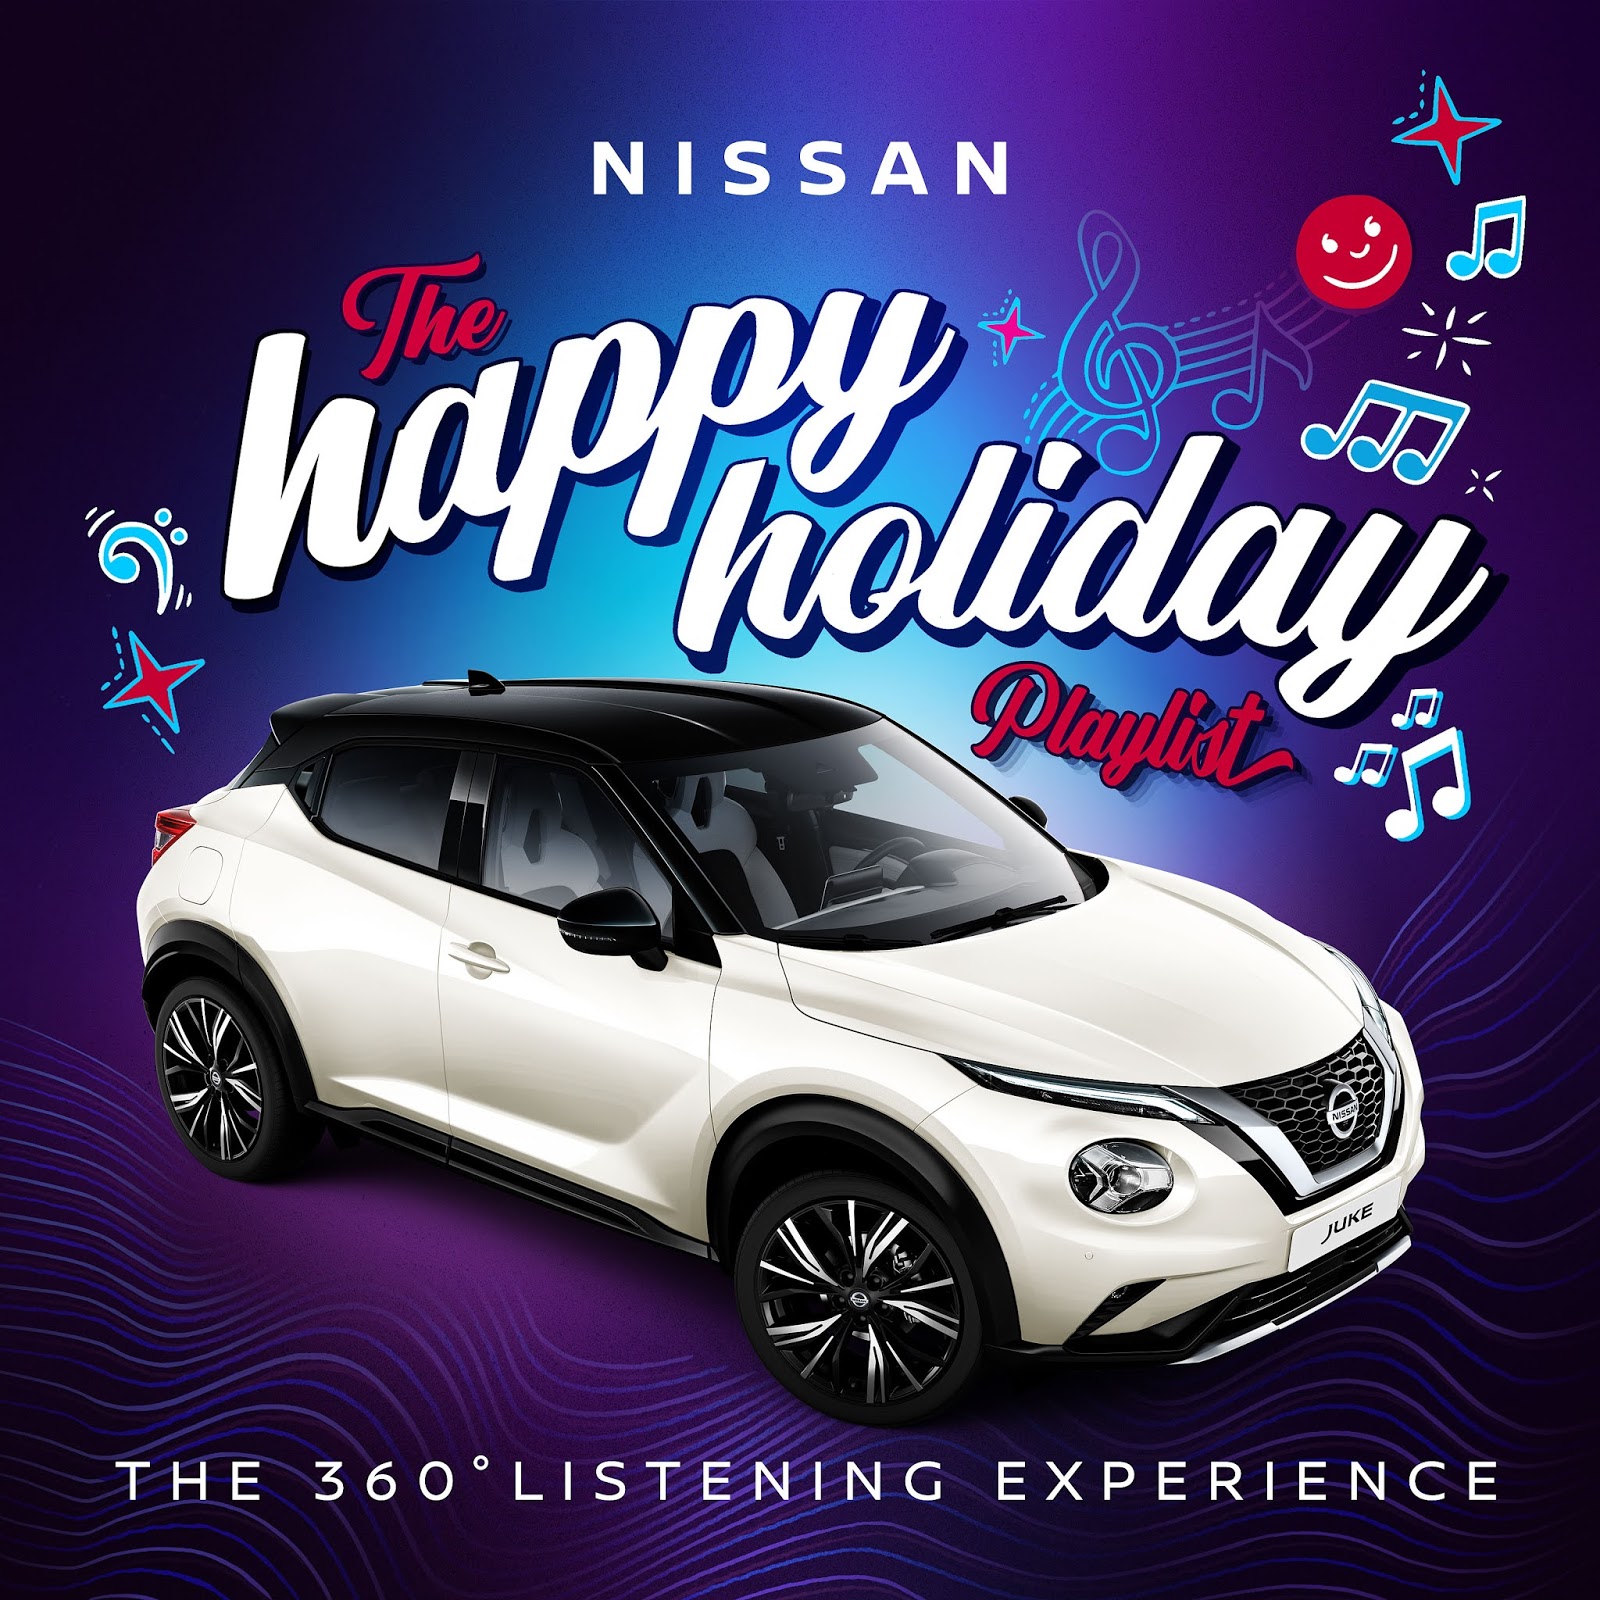 JUKE Happy Holiday Το Nissan JUKE μας βάζει στο κλίμα των εορτών, με την “The Happy Holiday Playlist”